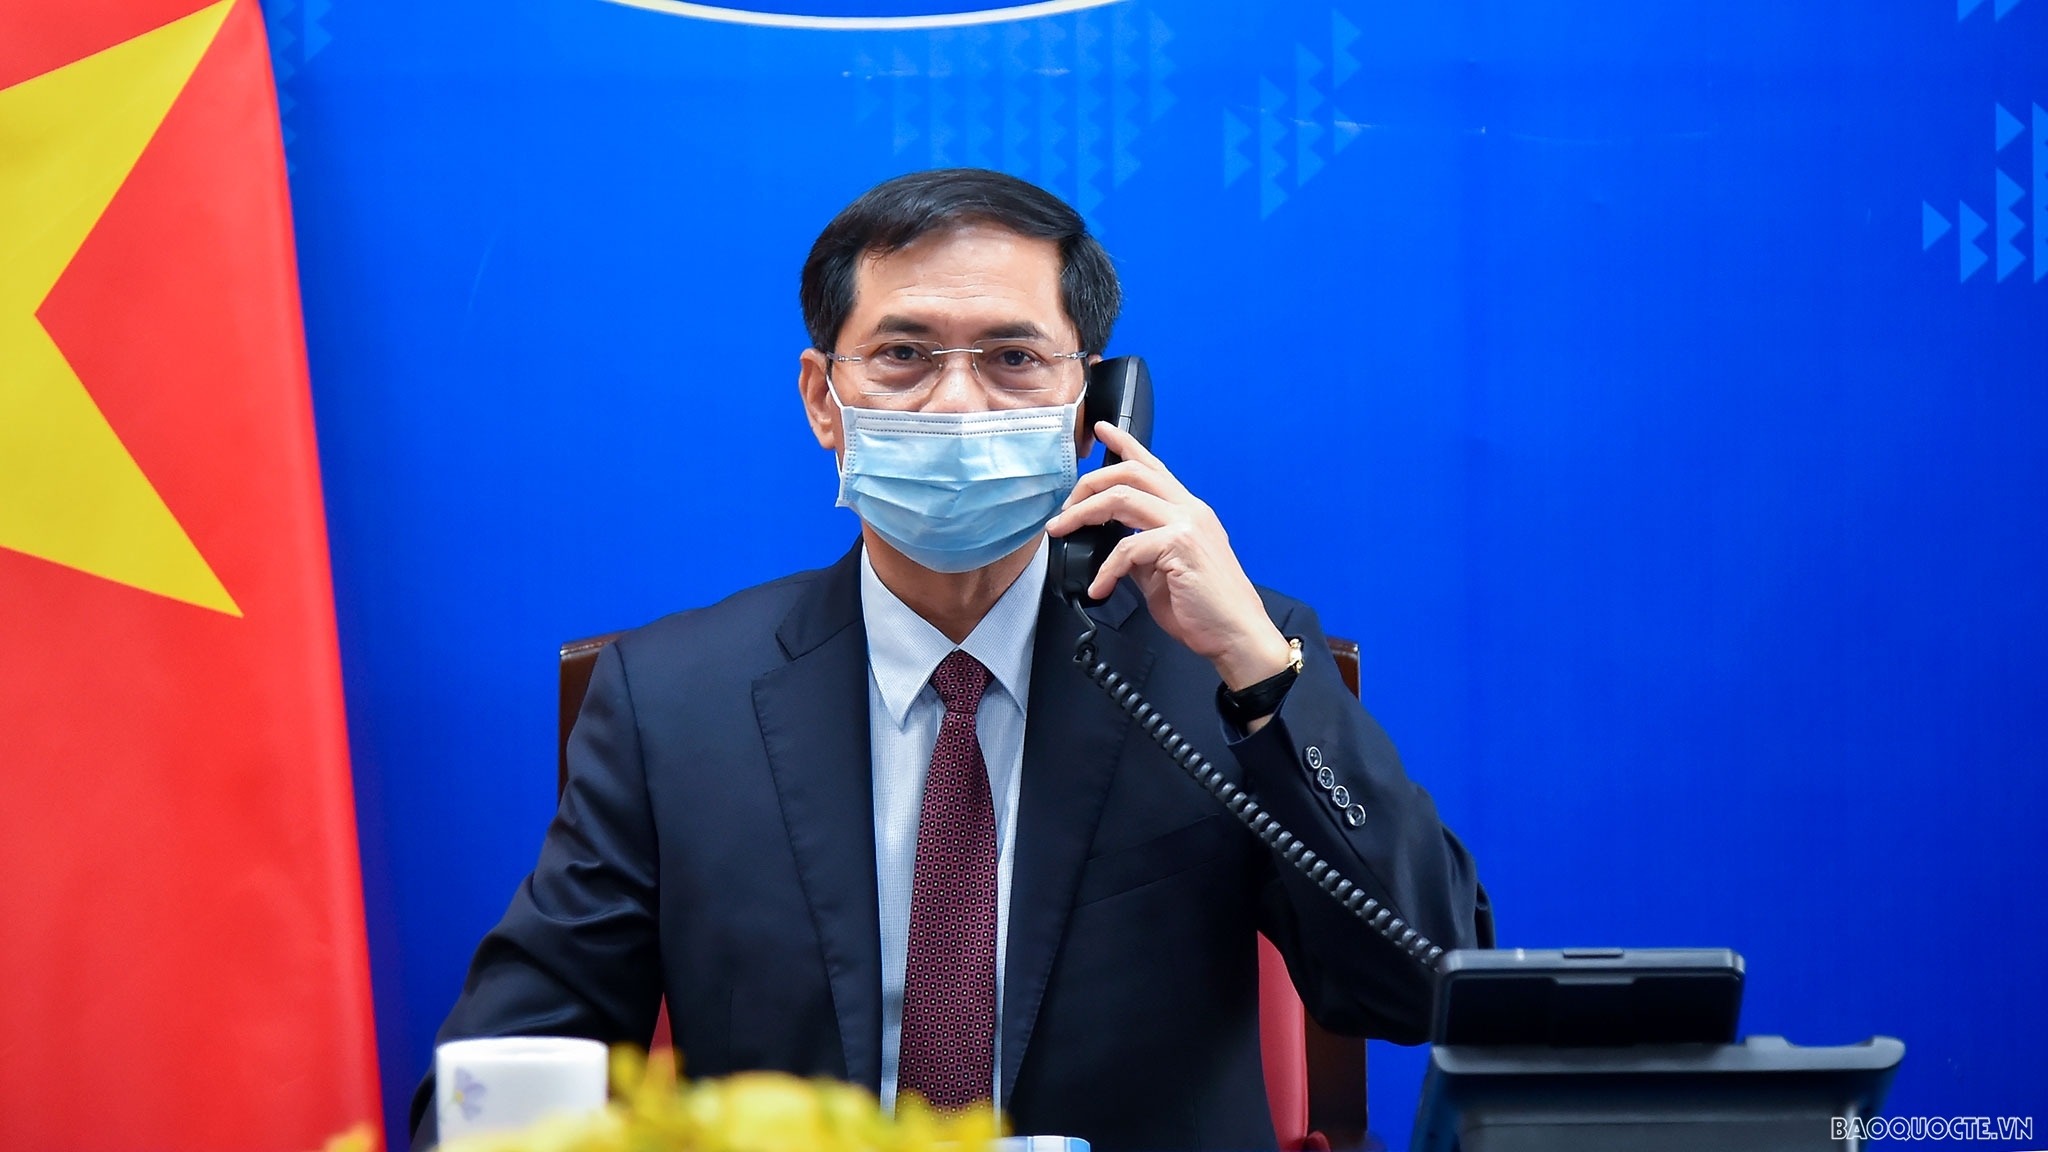 Bộ trưởng Ngoại giao Bùi Thanh Sơn đề nghị Đức tạo điều kiện để Việt Nam tiếp cận nguồn vaccine Covid-19